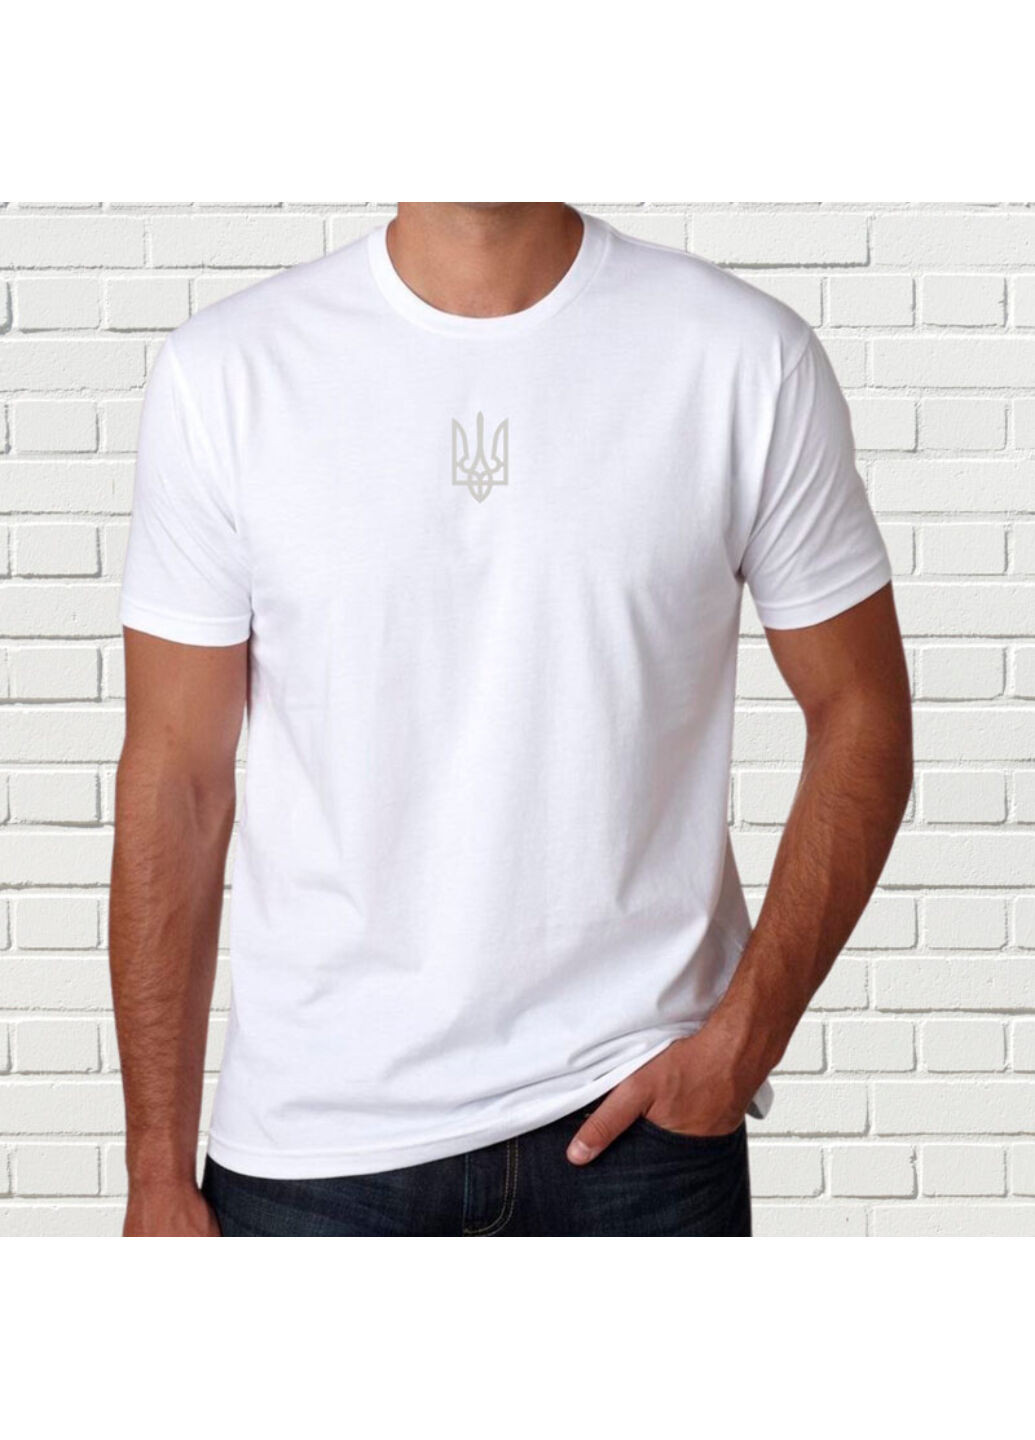 Біла футболка з вишивкою білого тризуба чоловіча білий l No Brand